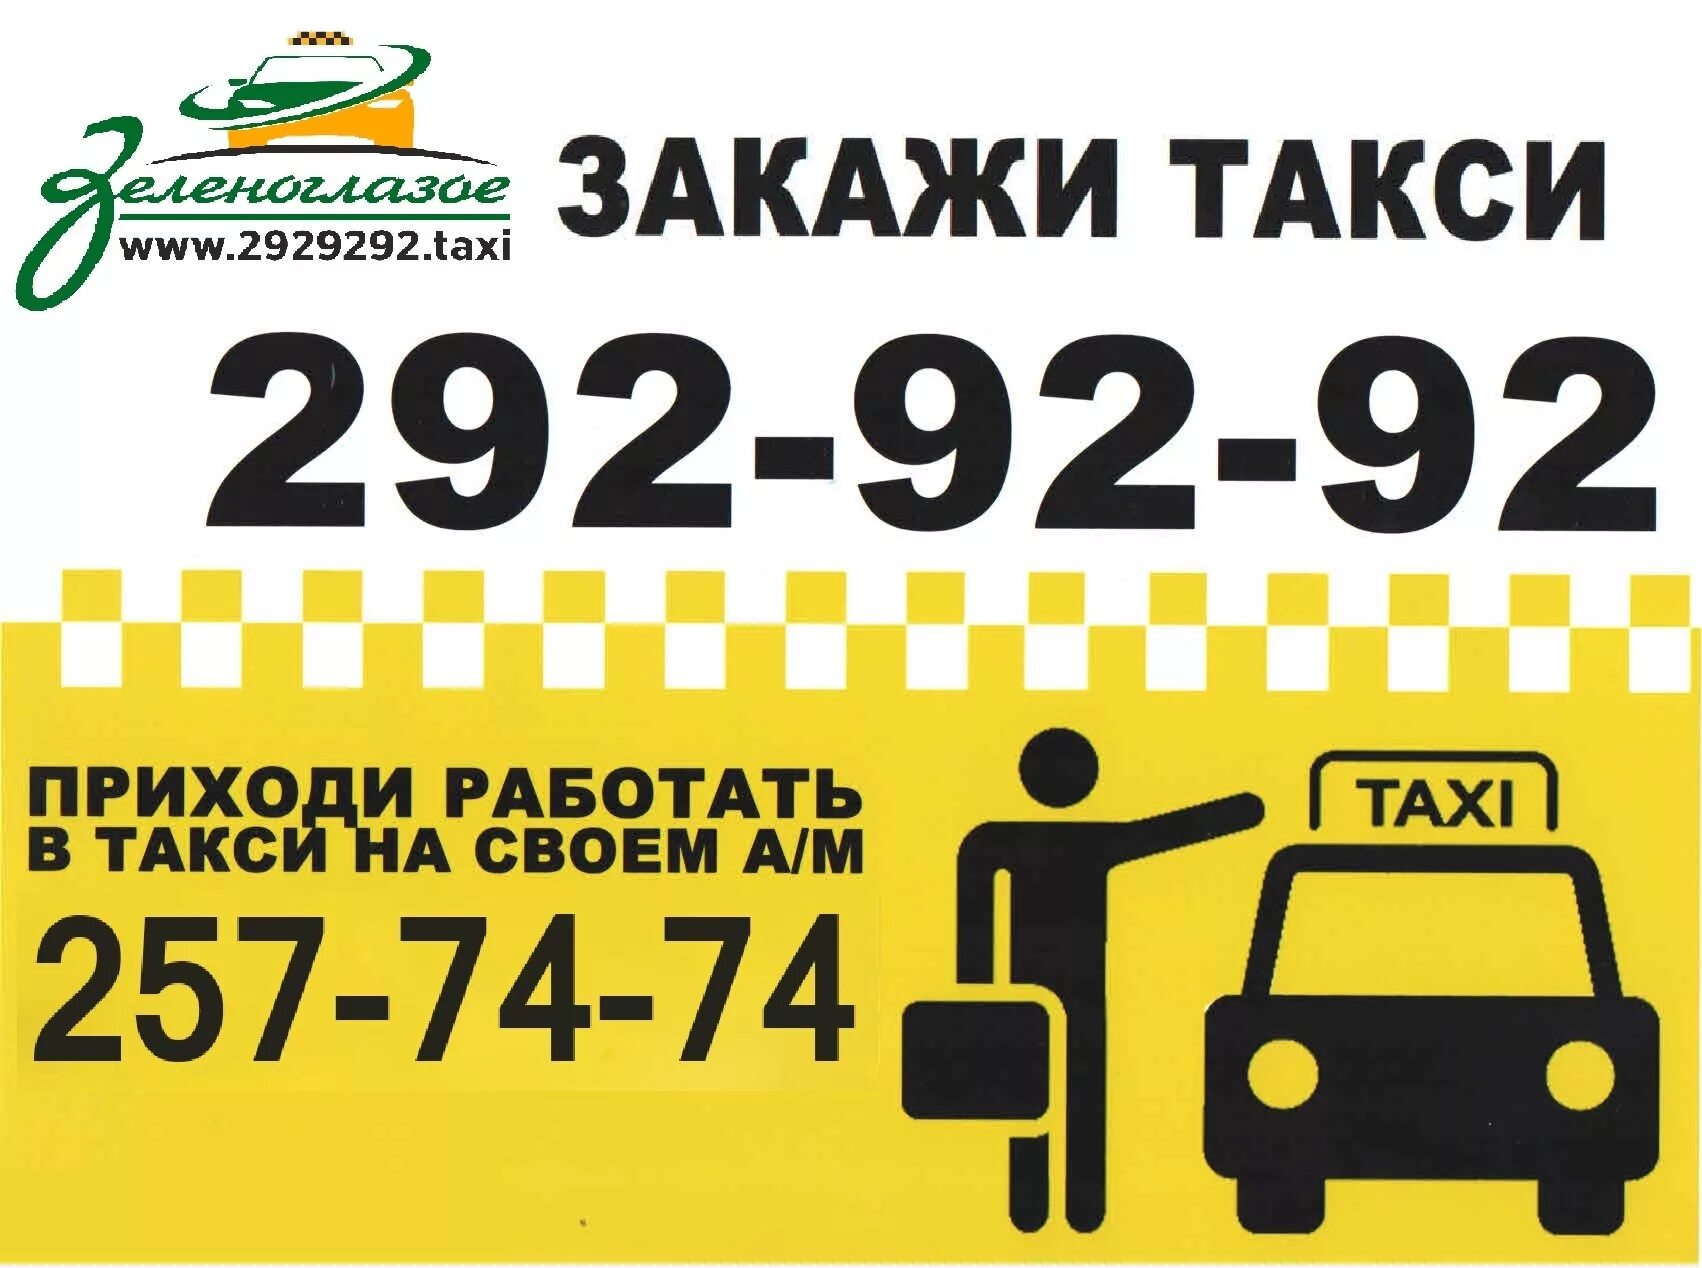 Такси искитим телефоны. Закажи такси. Самое дешевое такси номер. Такси Уфа. Номер недорогого такси.